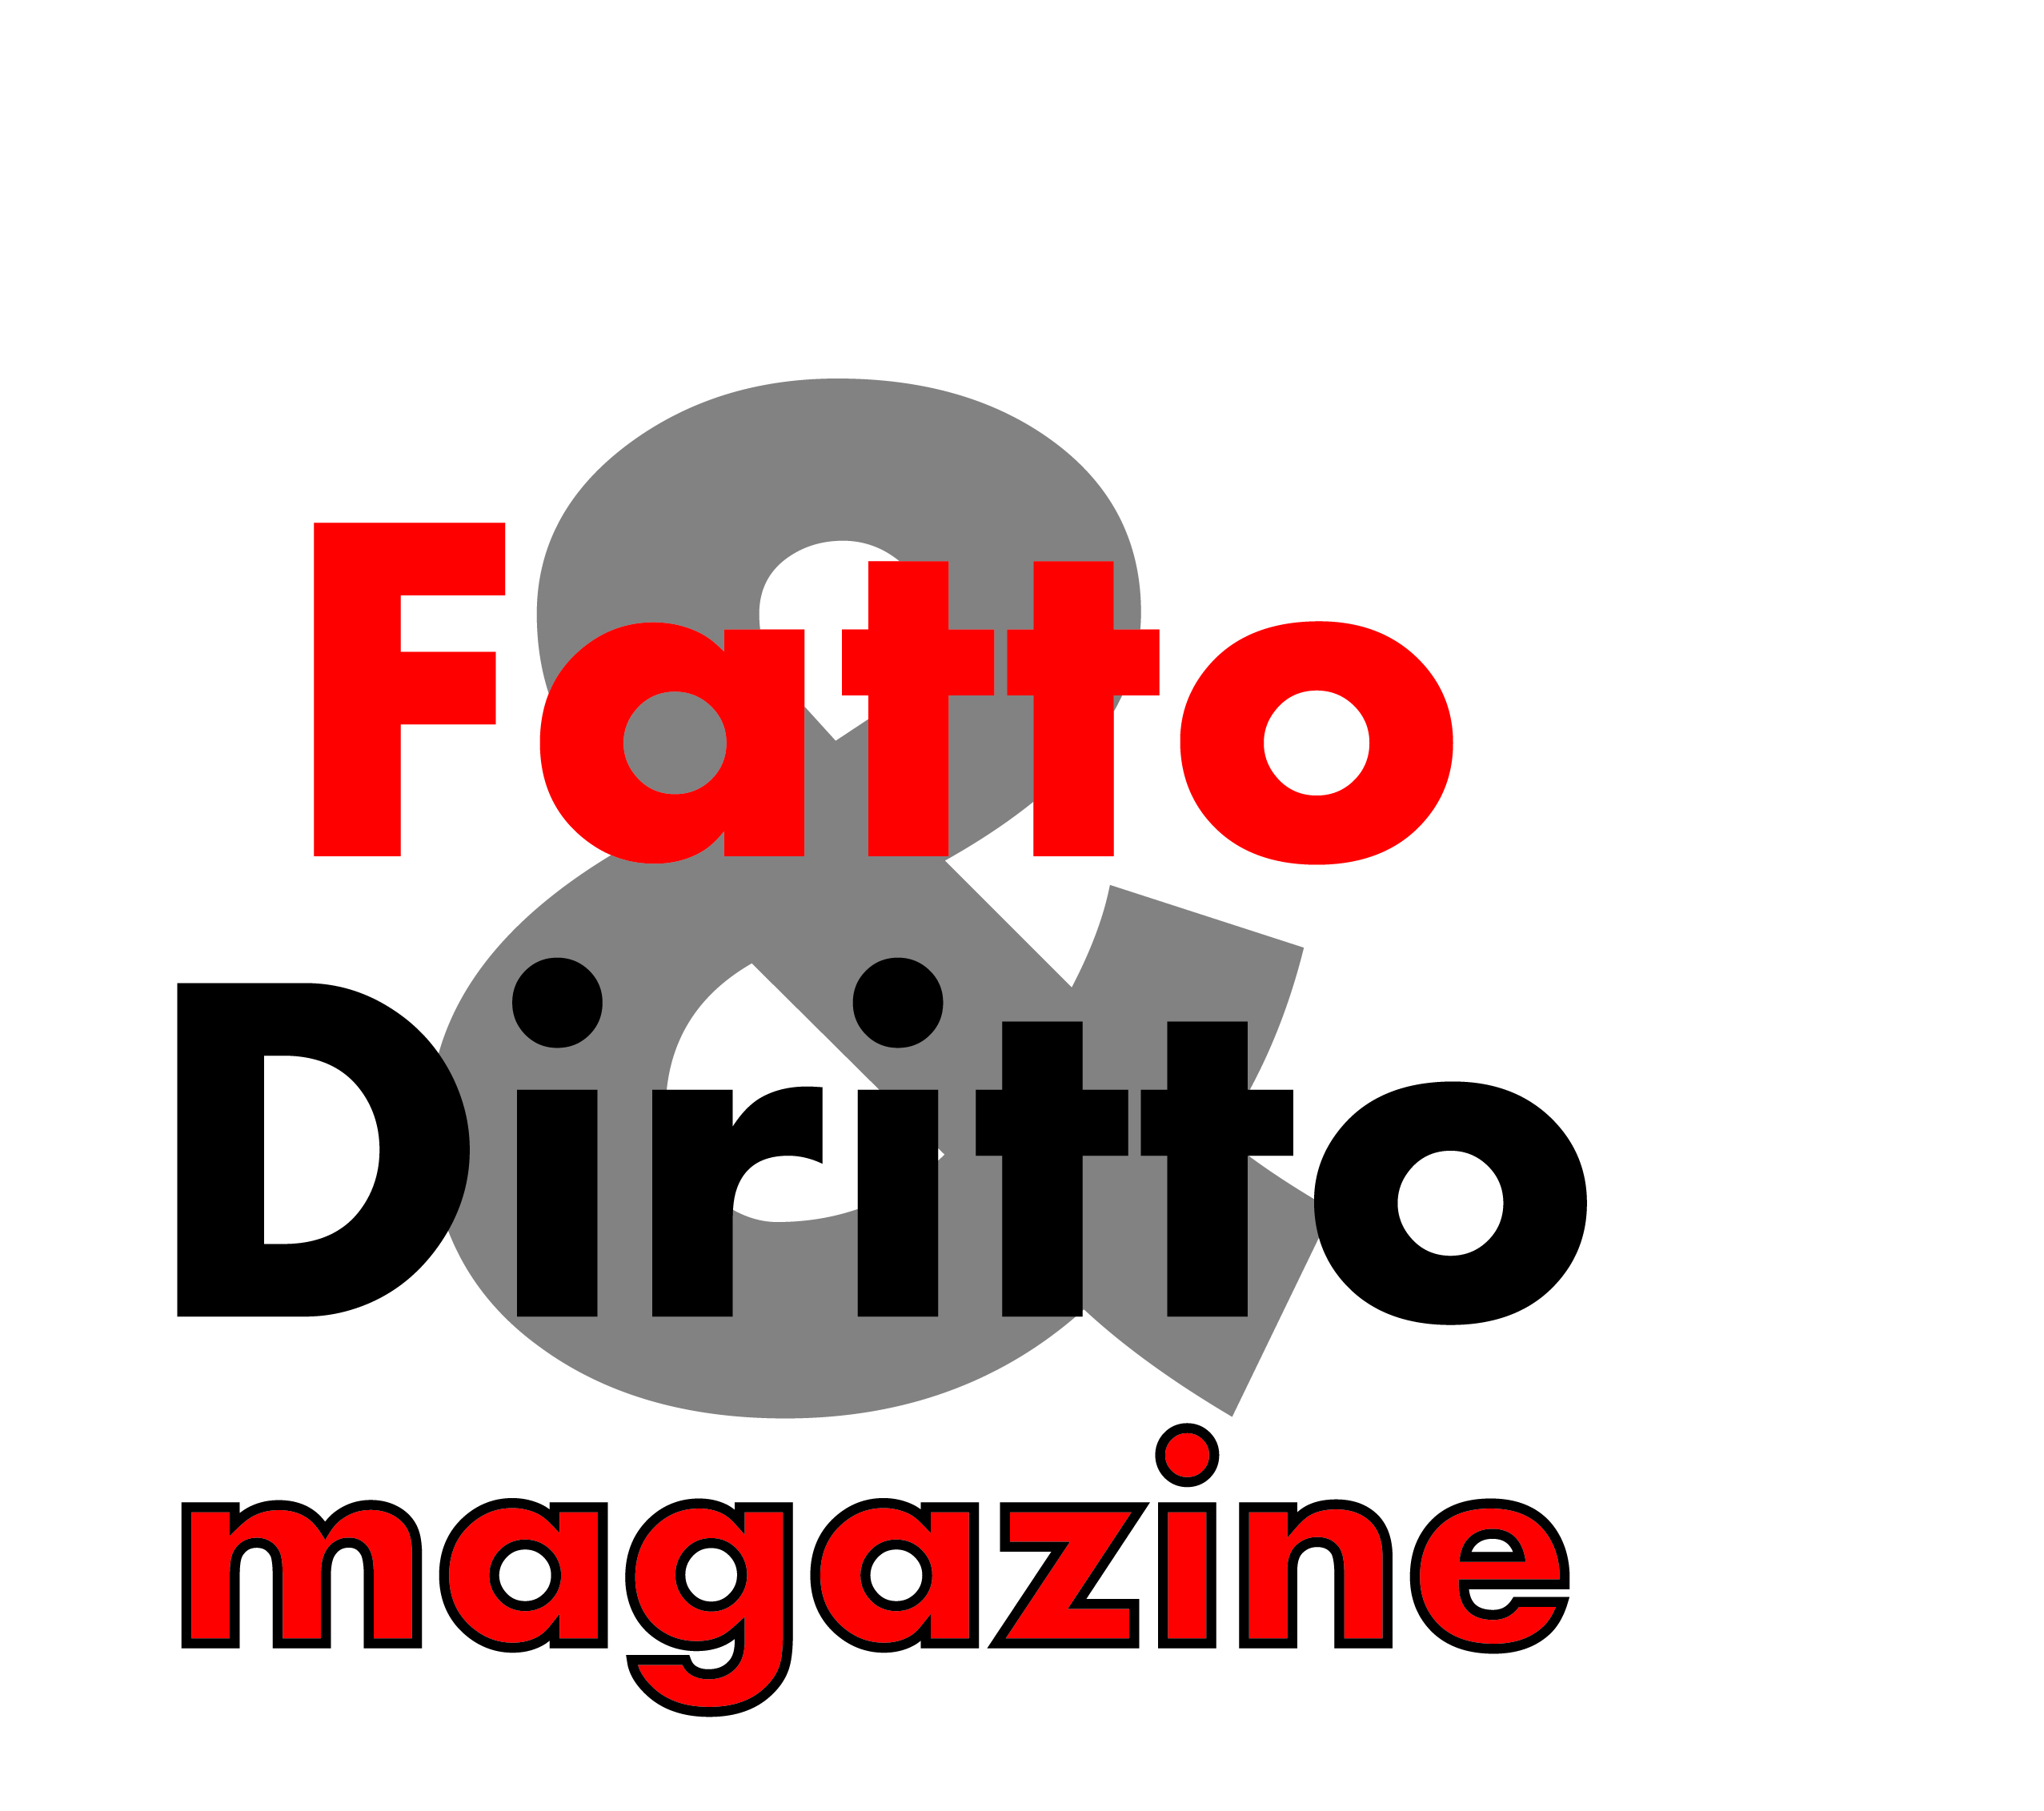 Fatto & Diritto Magazine: scopriamo il nuovo numero